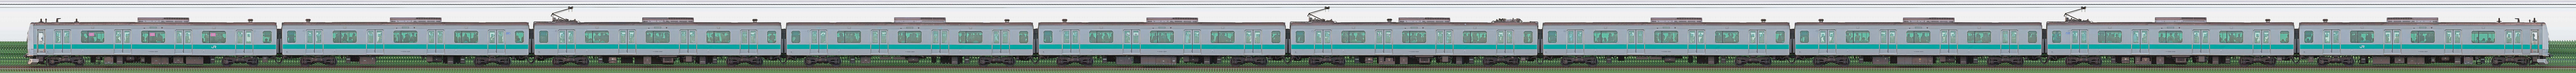 JR東日本 常磐緩行線 E233系2000番台マト1編成（海側）の編成サイドビュー